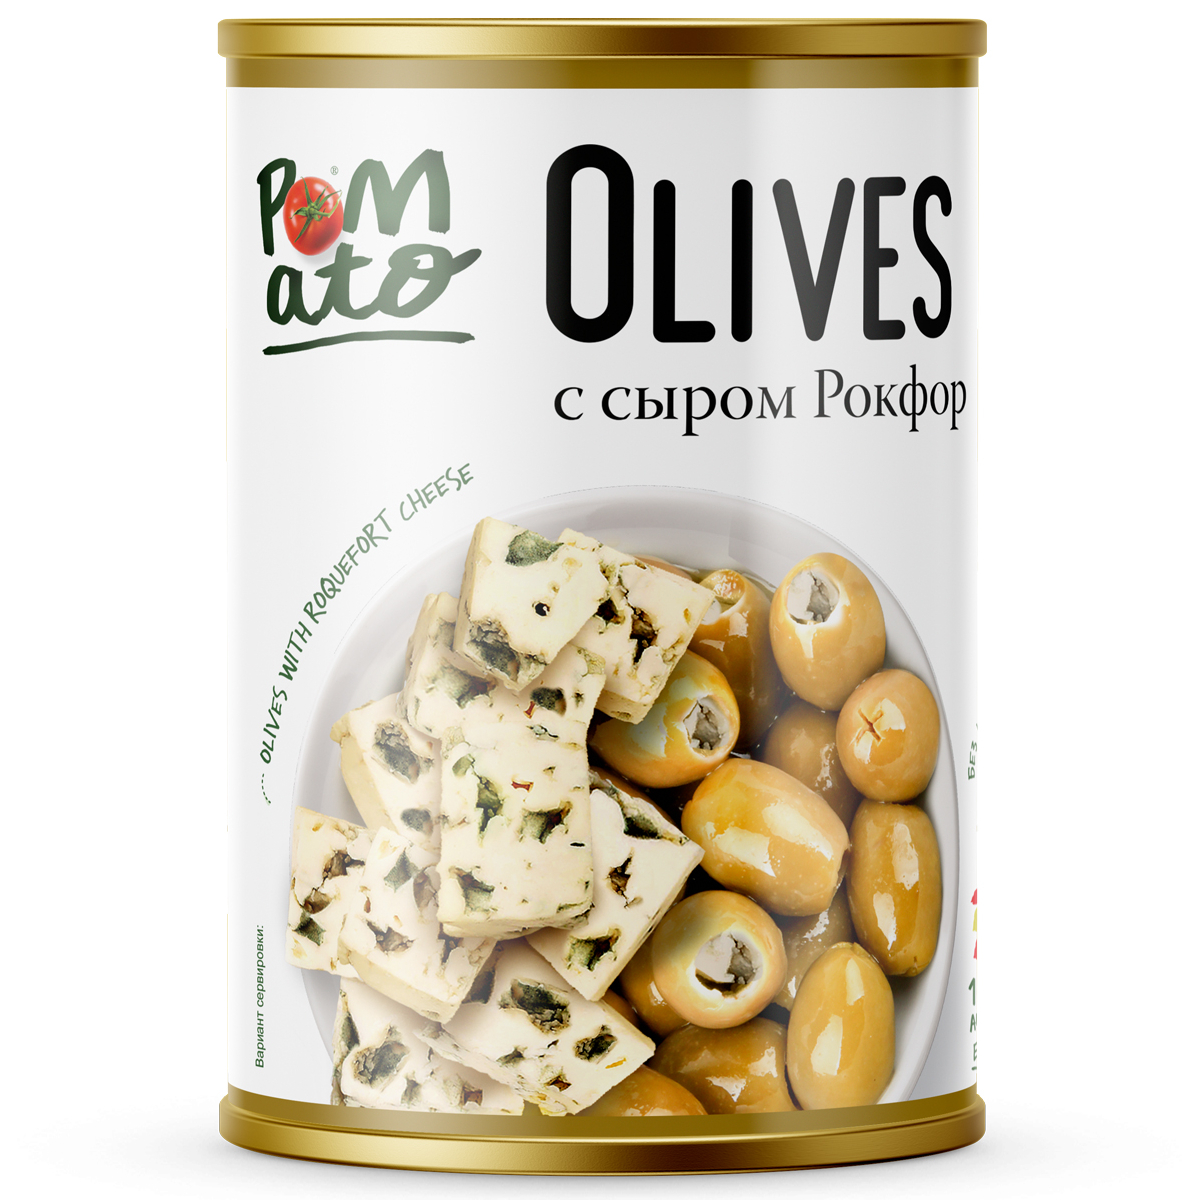 Оливки Pomato с сыром рокфор, 300 г оливки pomato по испански с овощами и специями 300 г